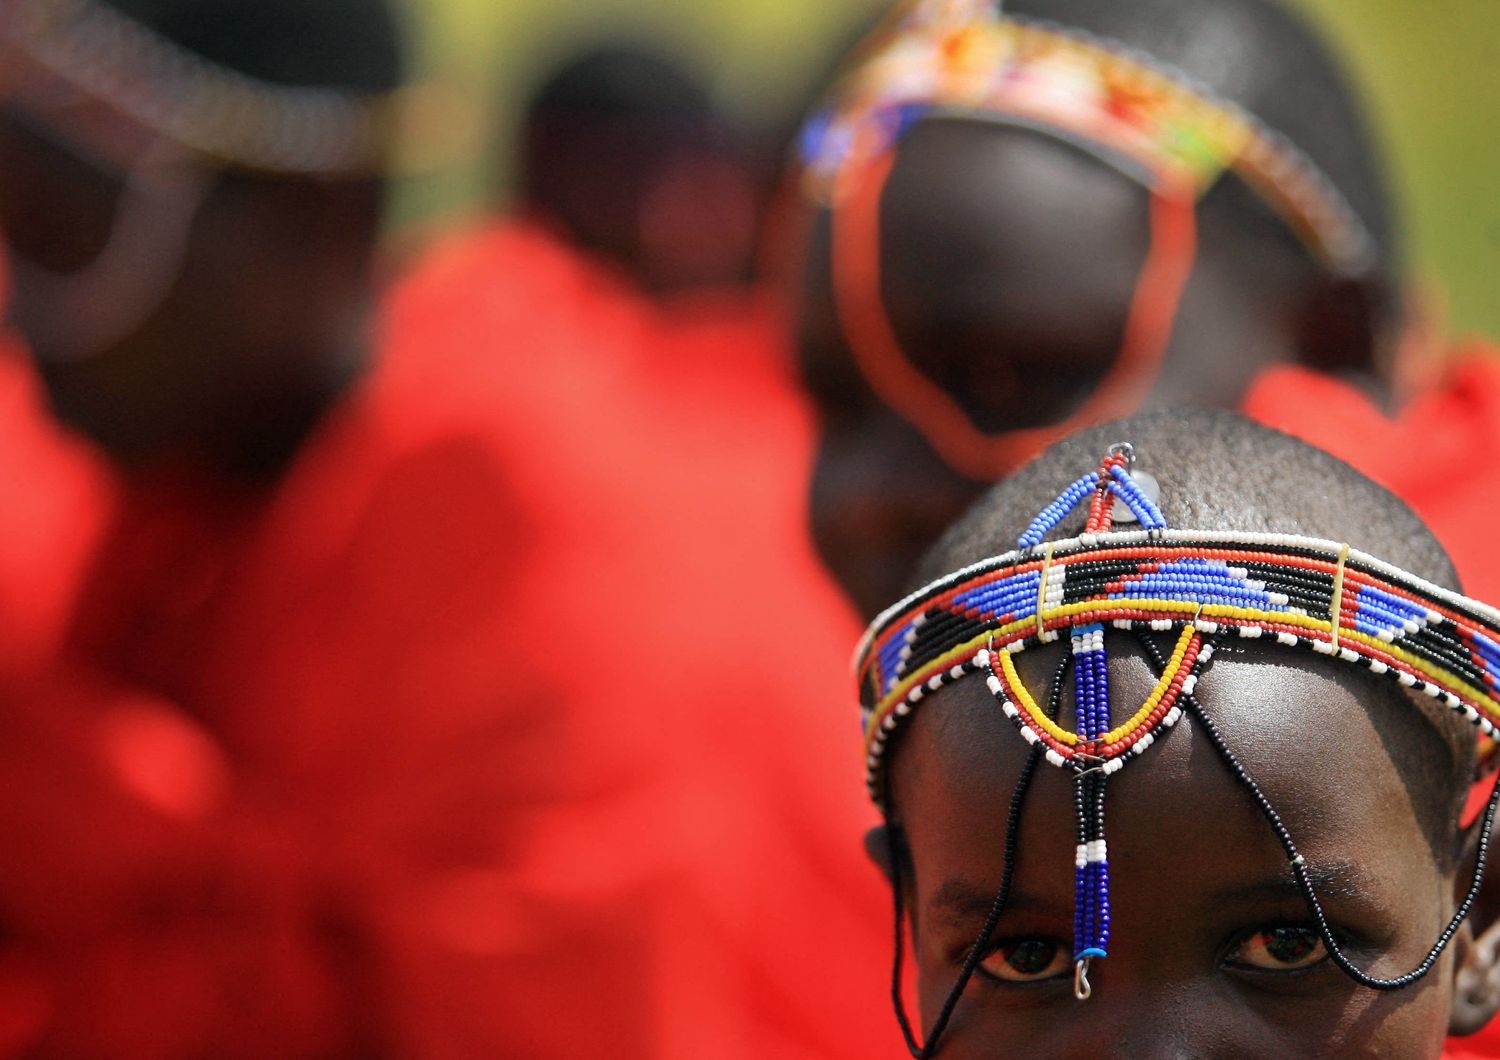 Mutilazioni genitali donne Unicef 4,6 milioni casi entro 2030